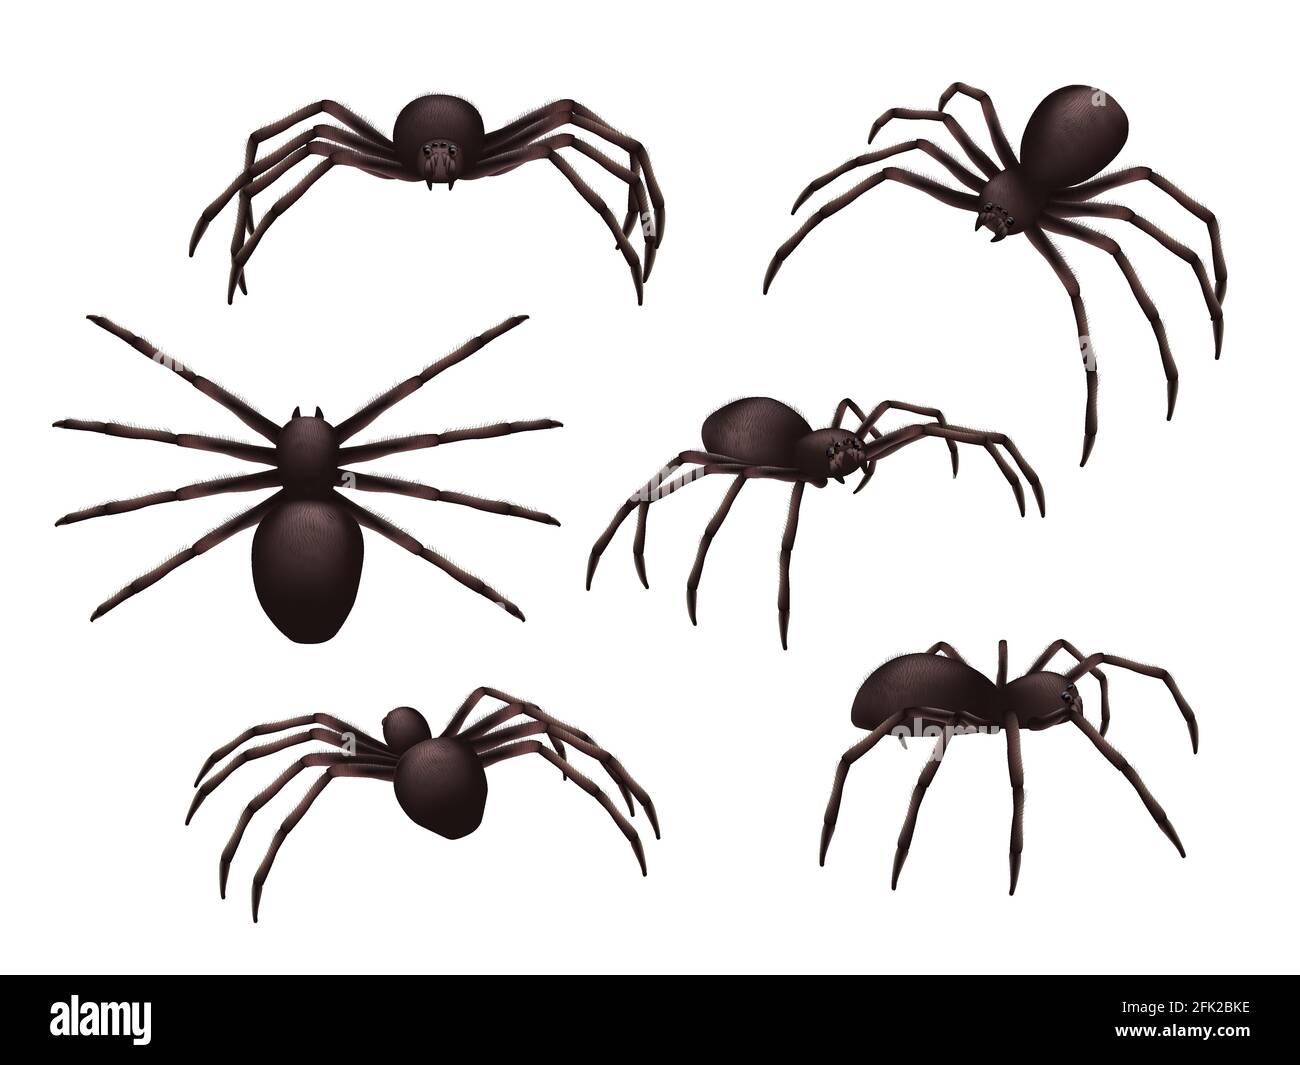 Insectes réalistes. Araignée danger venom horreur poison symboles noirs ensemble de vecteurs Illustration de Vecteur